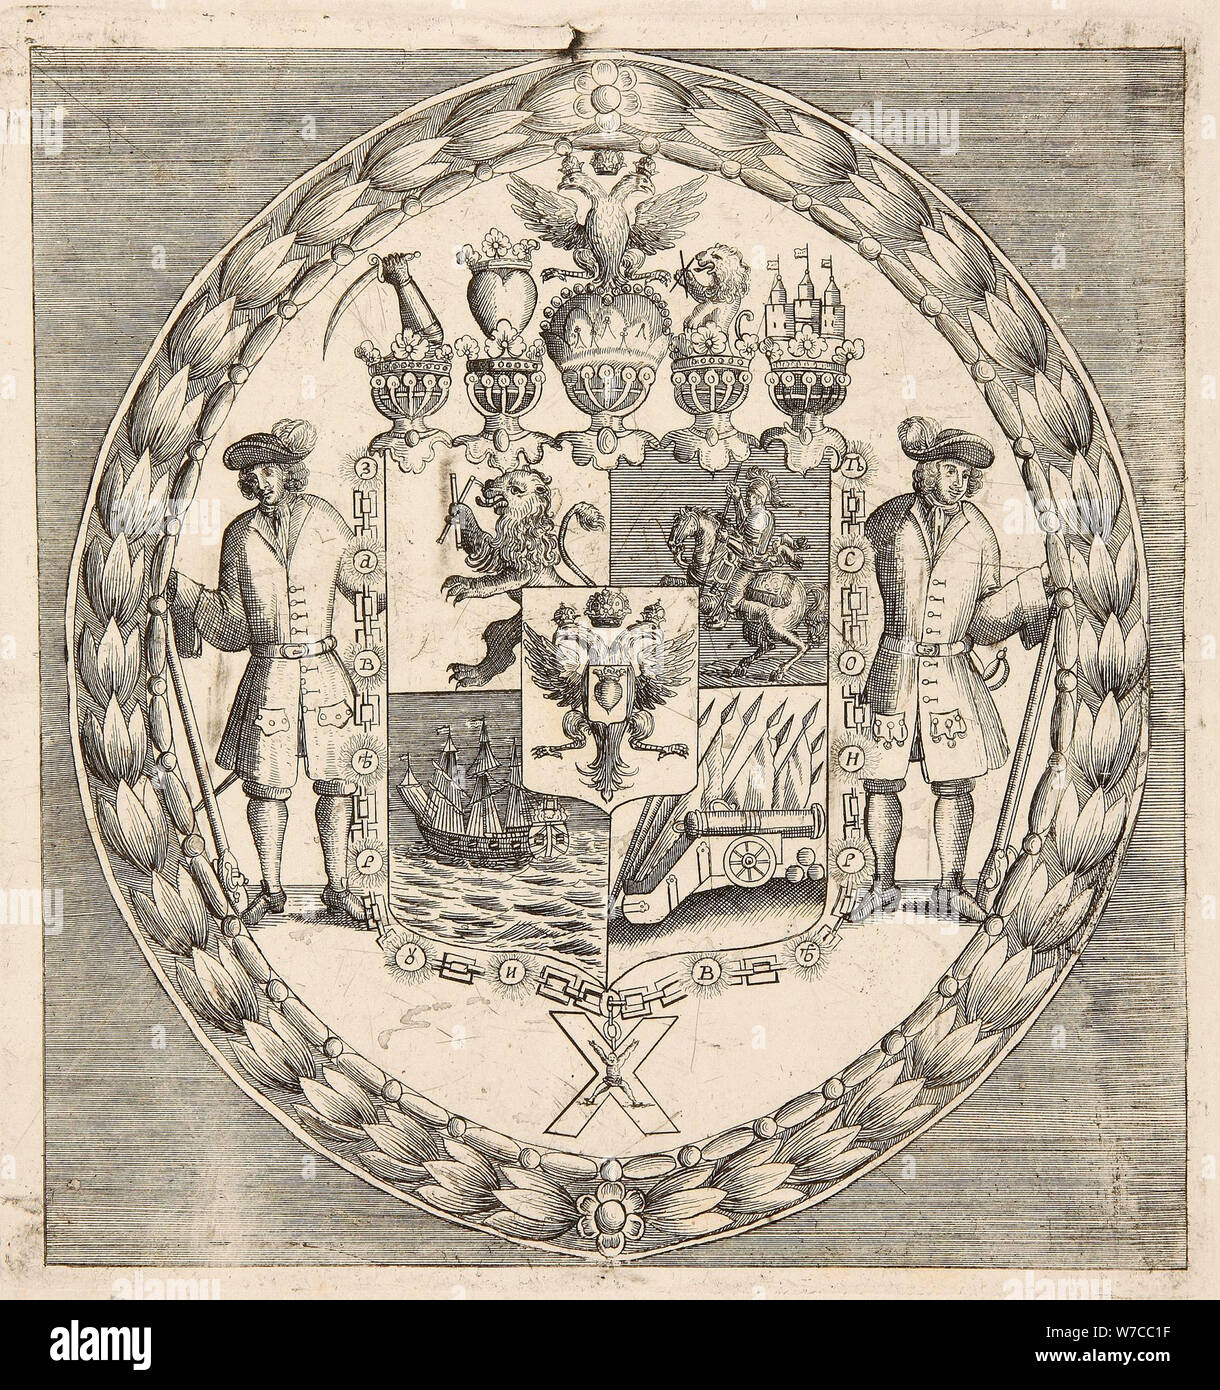 Das Wappen der Fürsten Alexander Menschikow Danilovich. Stockfoto